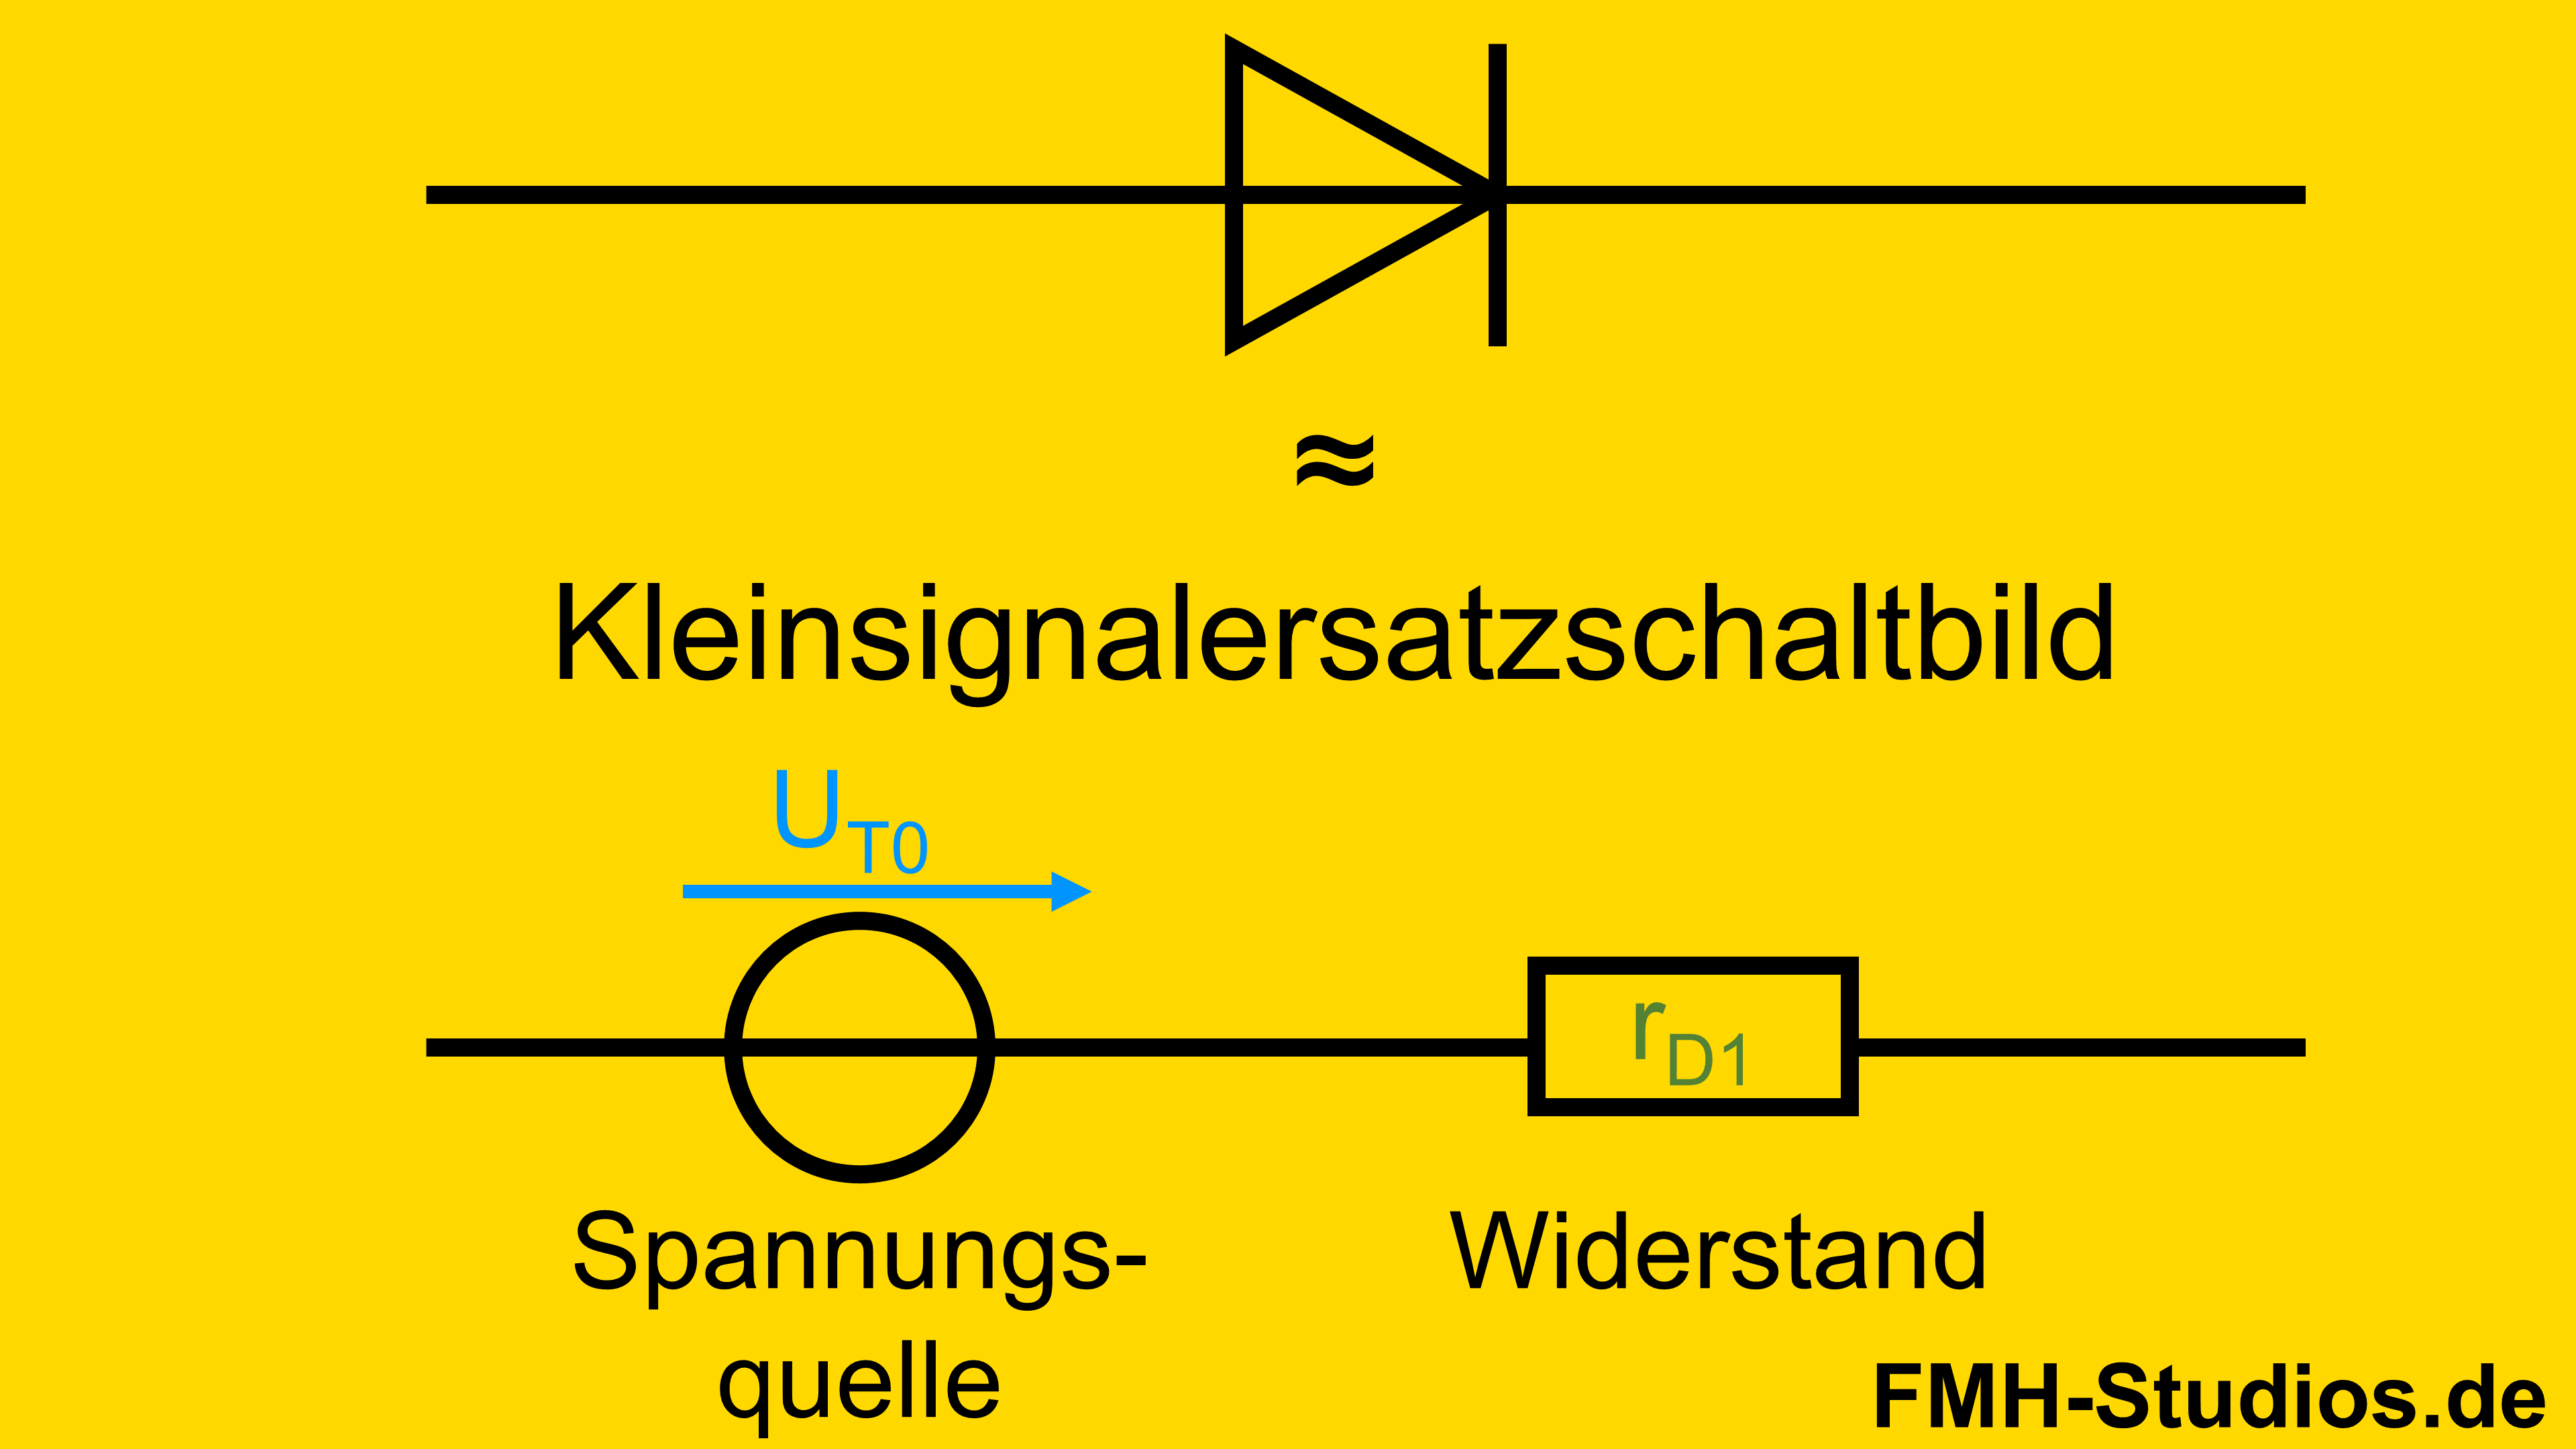 Diode - PN-Übergang - Halbleiter - Kleinsignalersatzschaltbild - Kleinsignal - Ersatzschaltbild - Kennlinie - Schaltung - Spannungsquelle